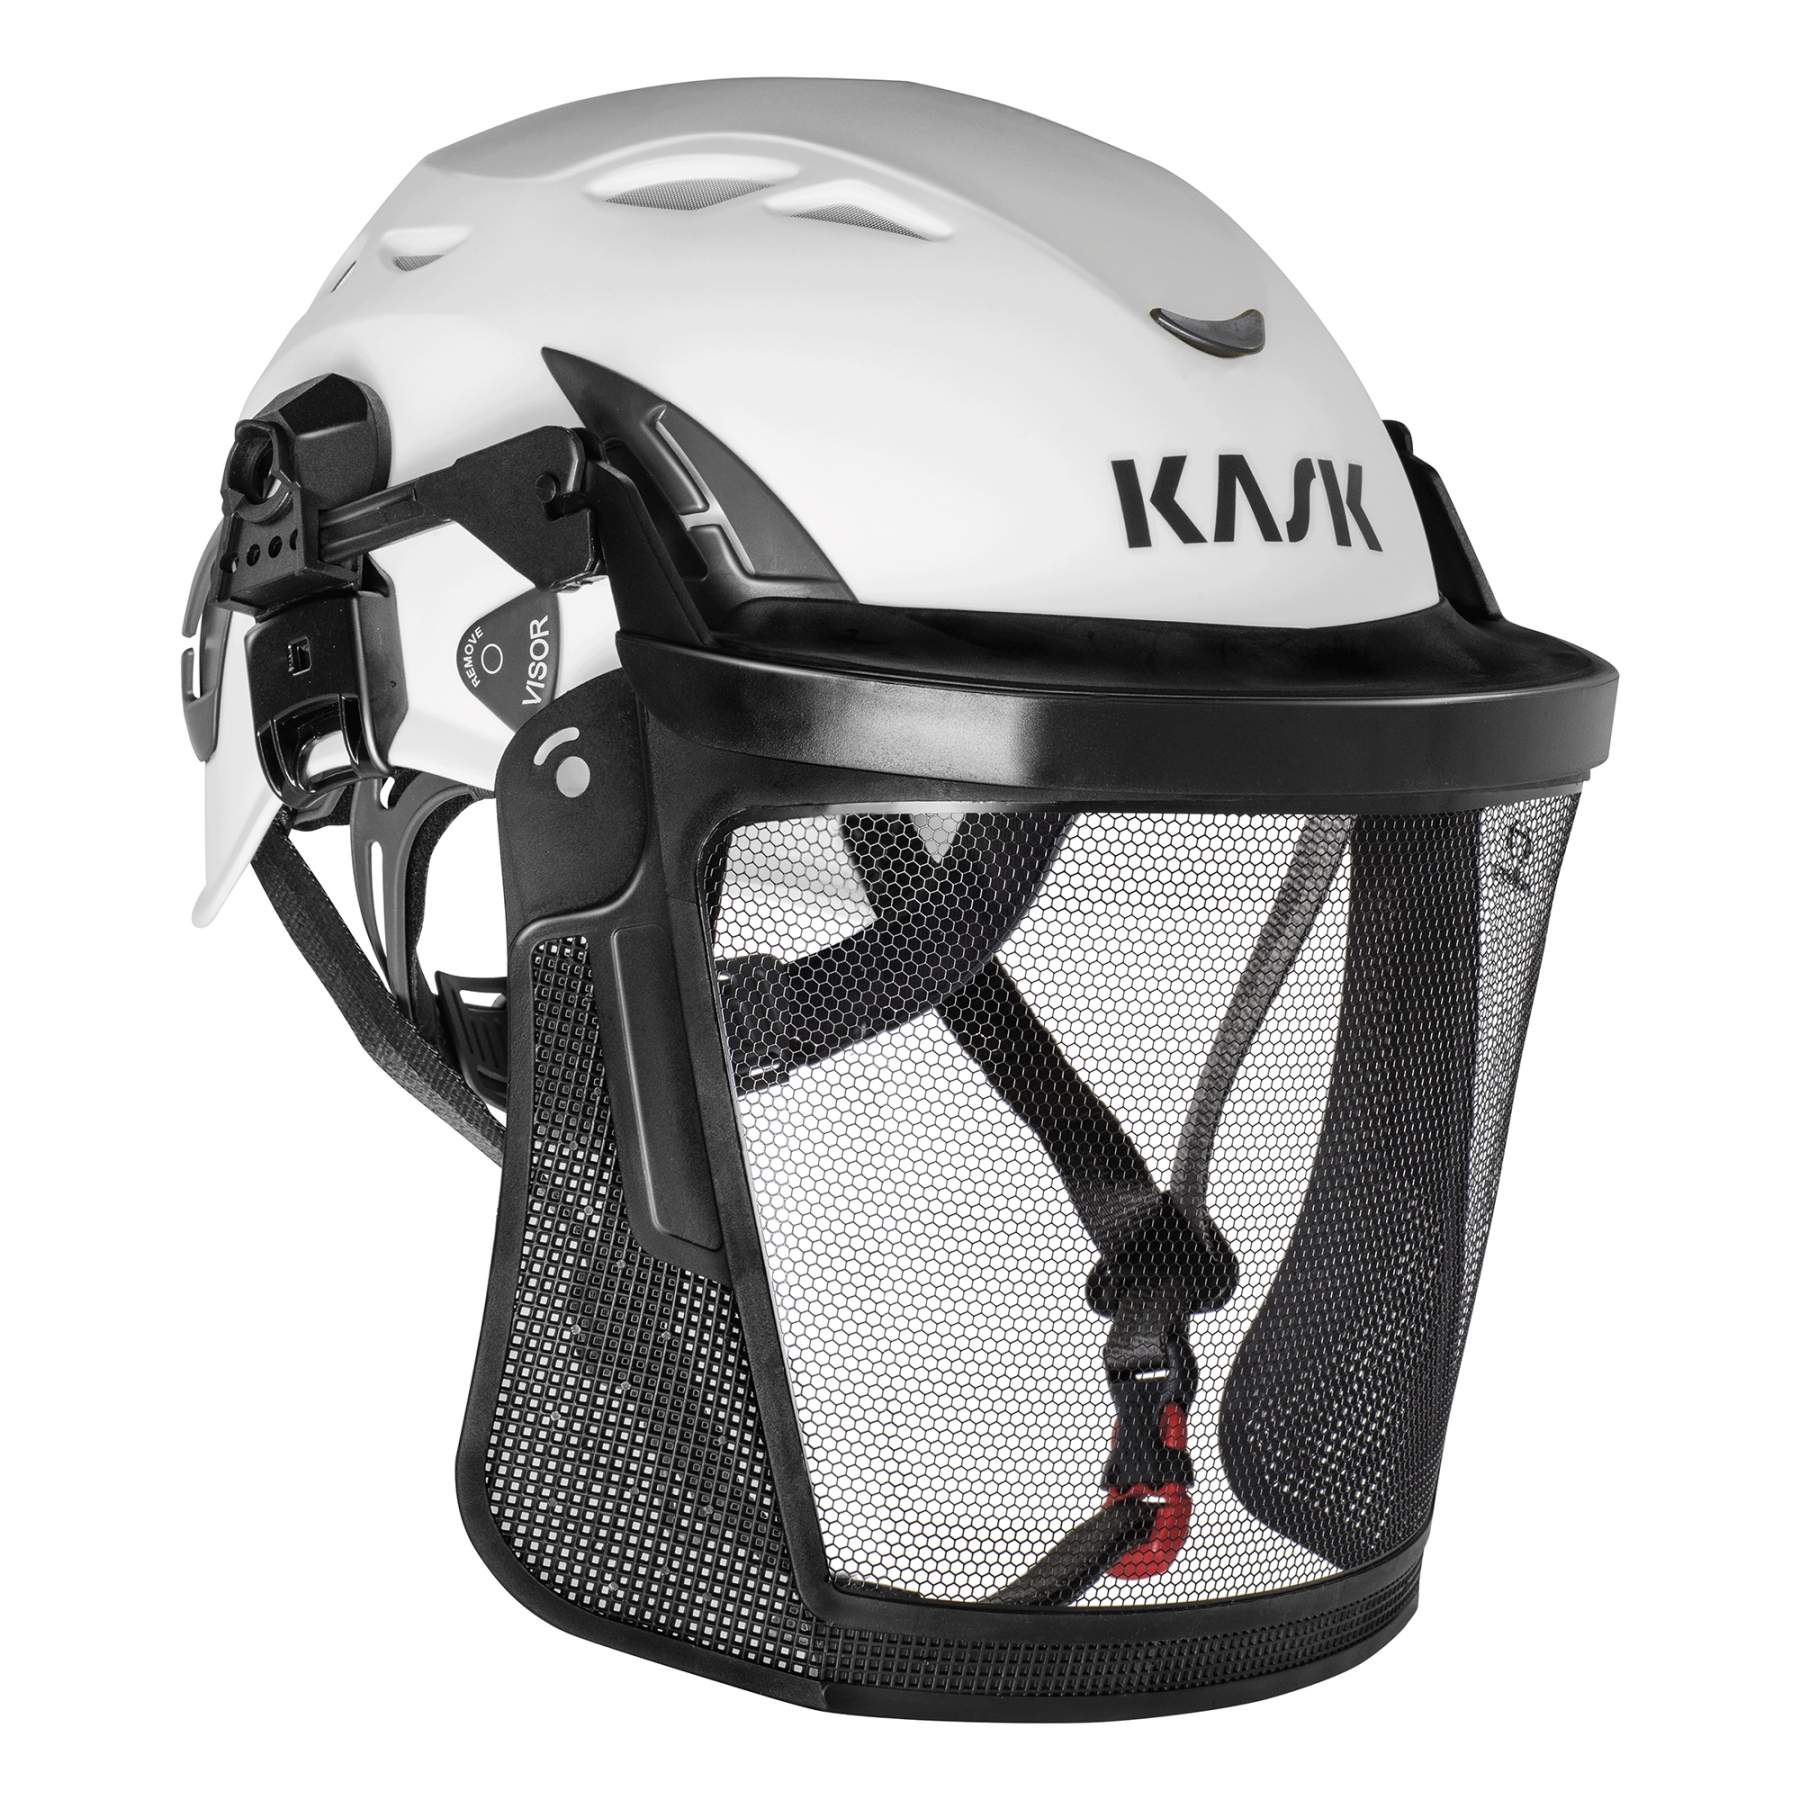 KASK Helmet Visor Carrier attachment 30 mm